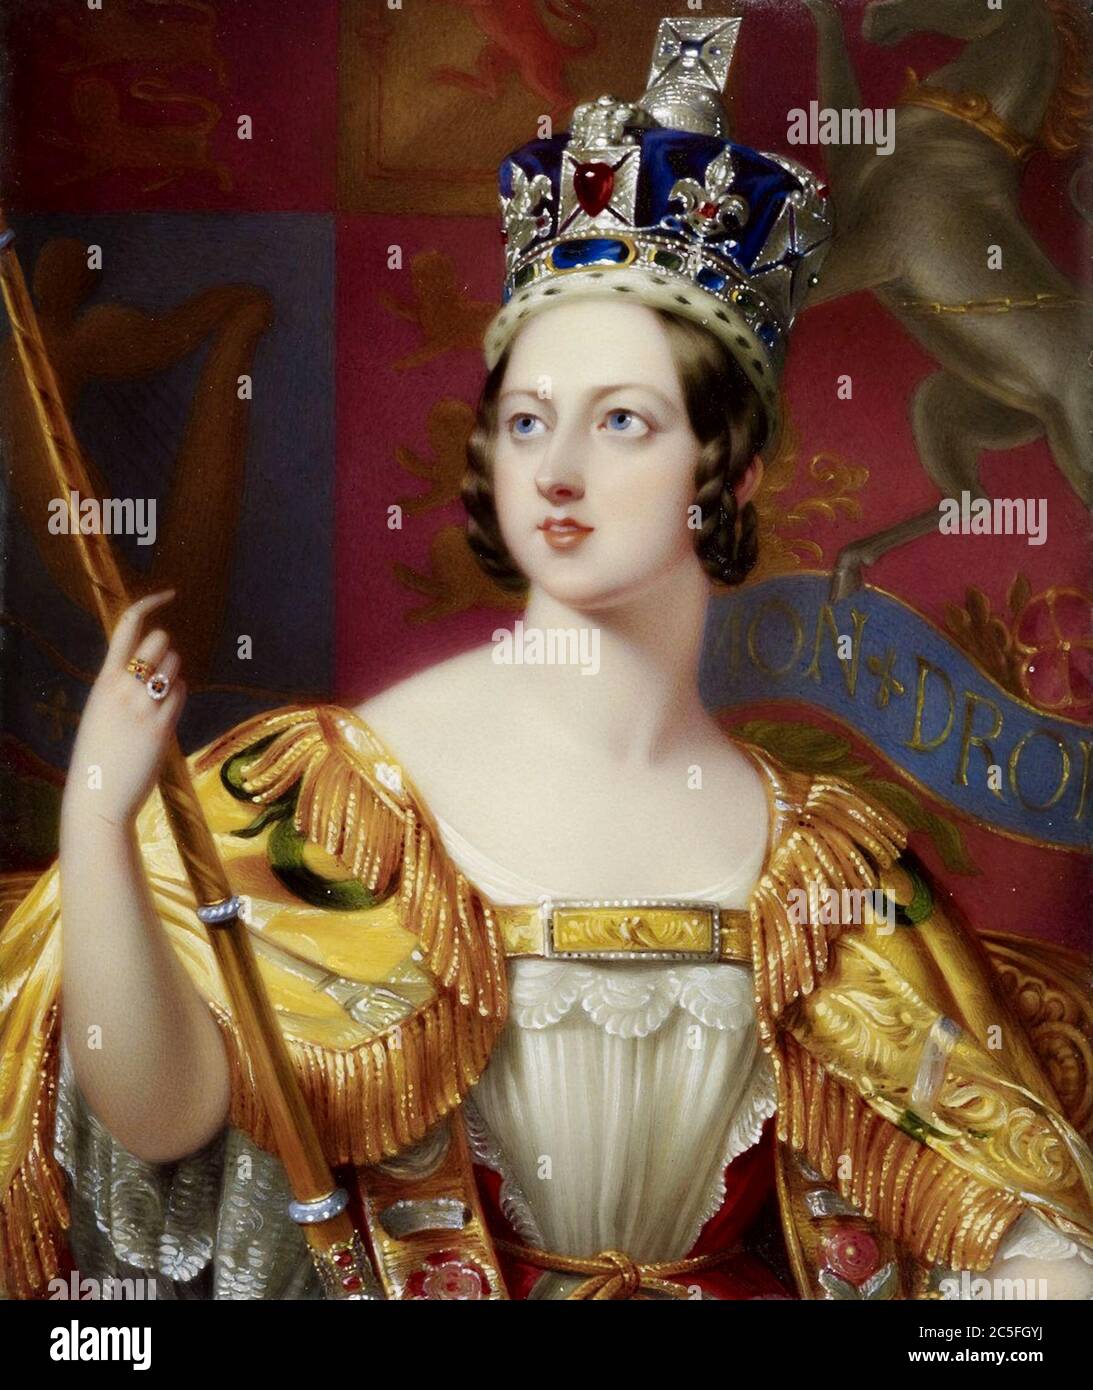 Victoria (Alexandrina Victoria; 1819 – 1901) Reina del Reino Unido de Gran Bretaña e Irlanda desde el 20 de junio de 1837 hasta su muerte. Retrato coronación Foto de stock